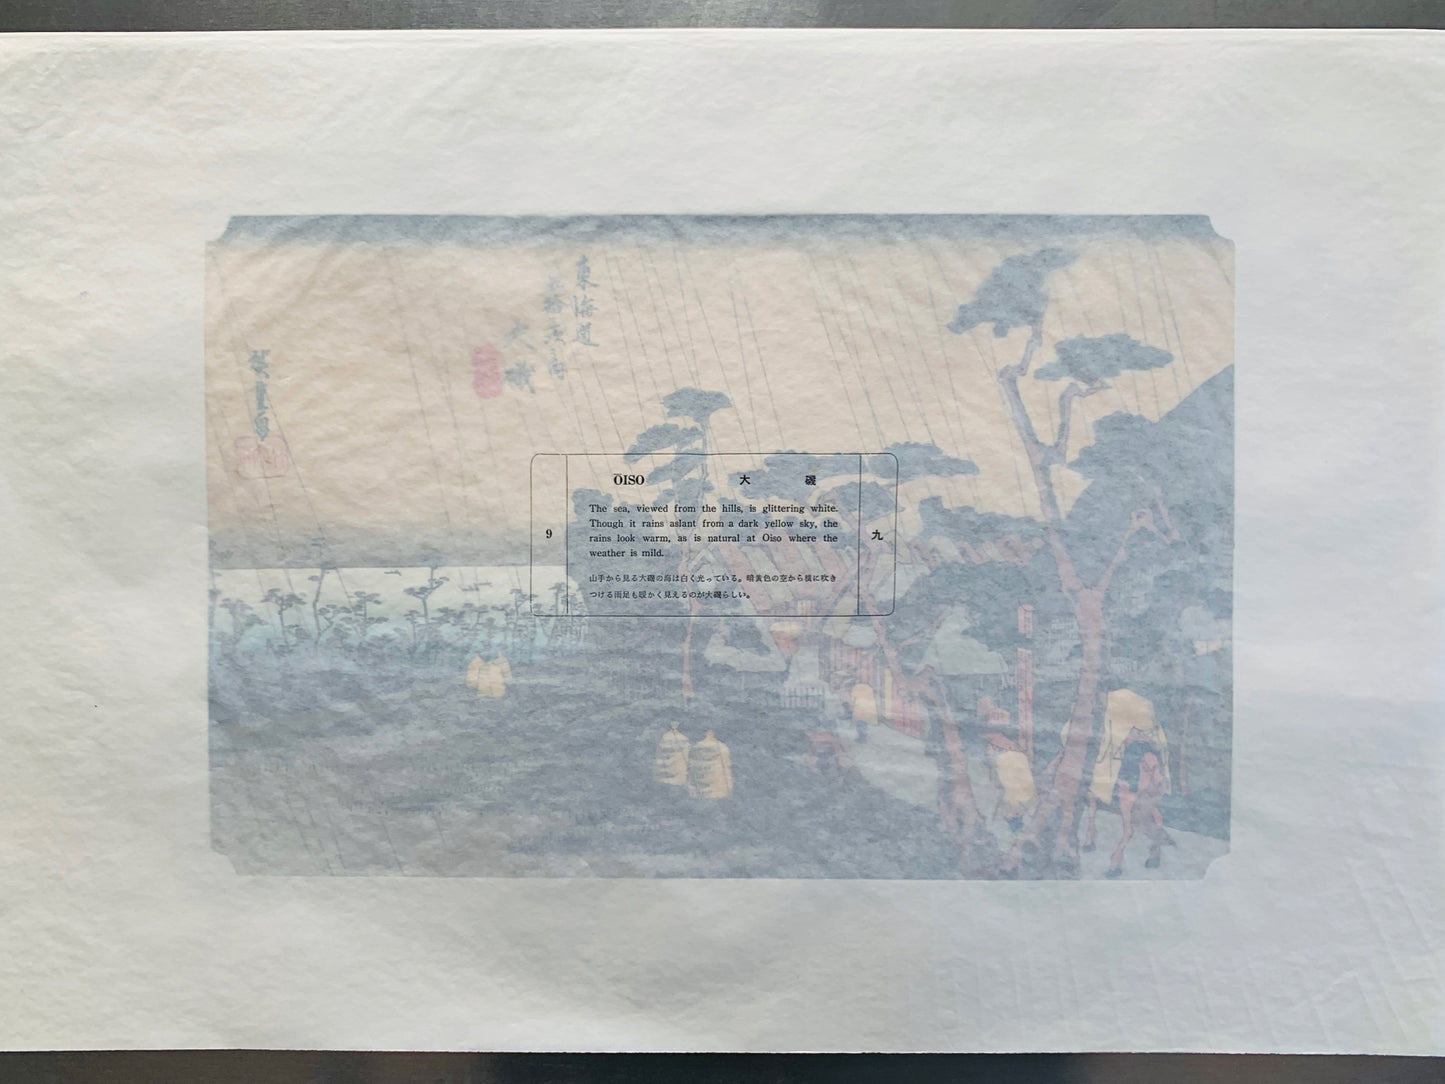 estampe japonaise paysage de Hiroshige, des pèlerins arrvient sous la pluie à la station Oiso du Tokaido, le texte sur papier cristal